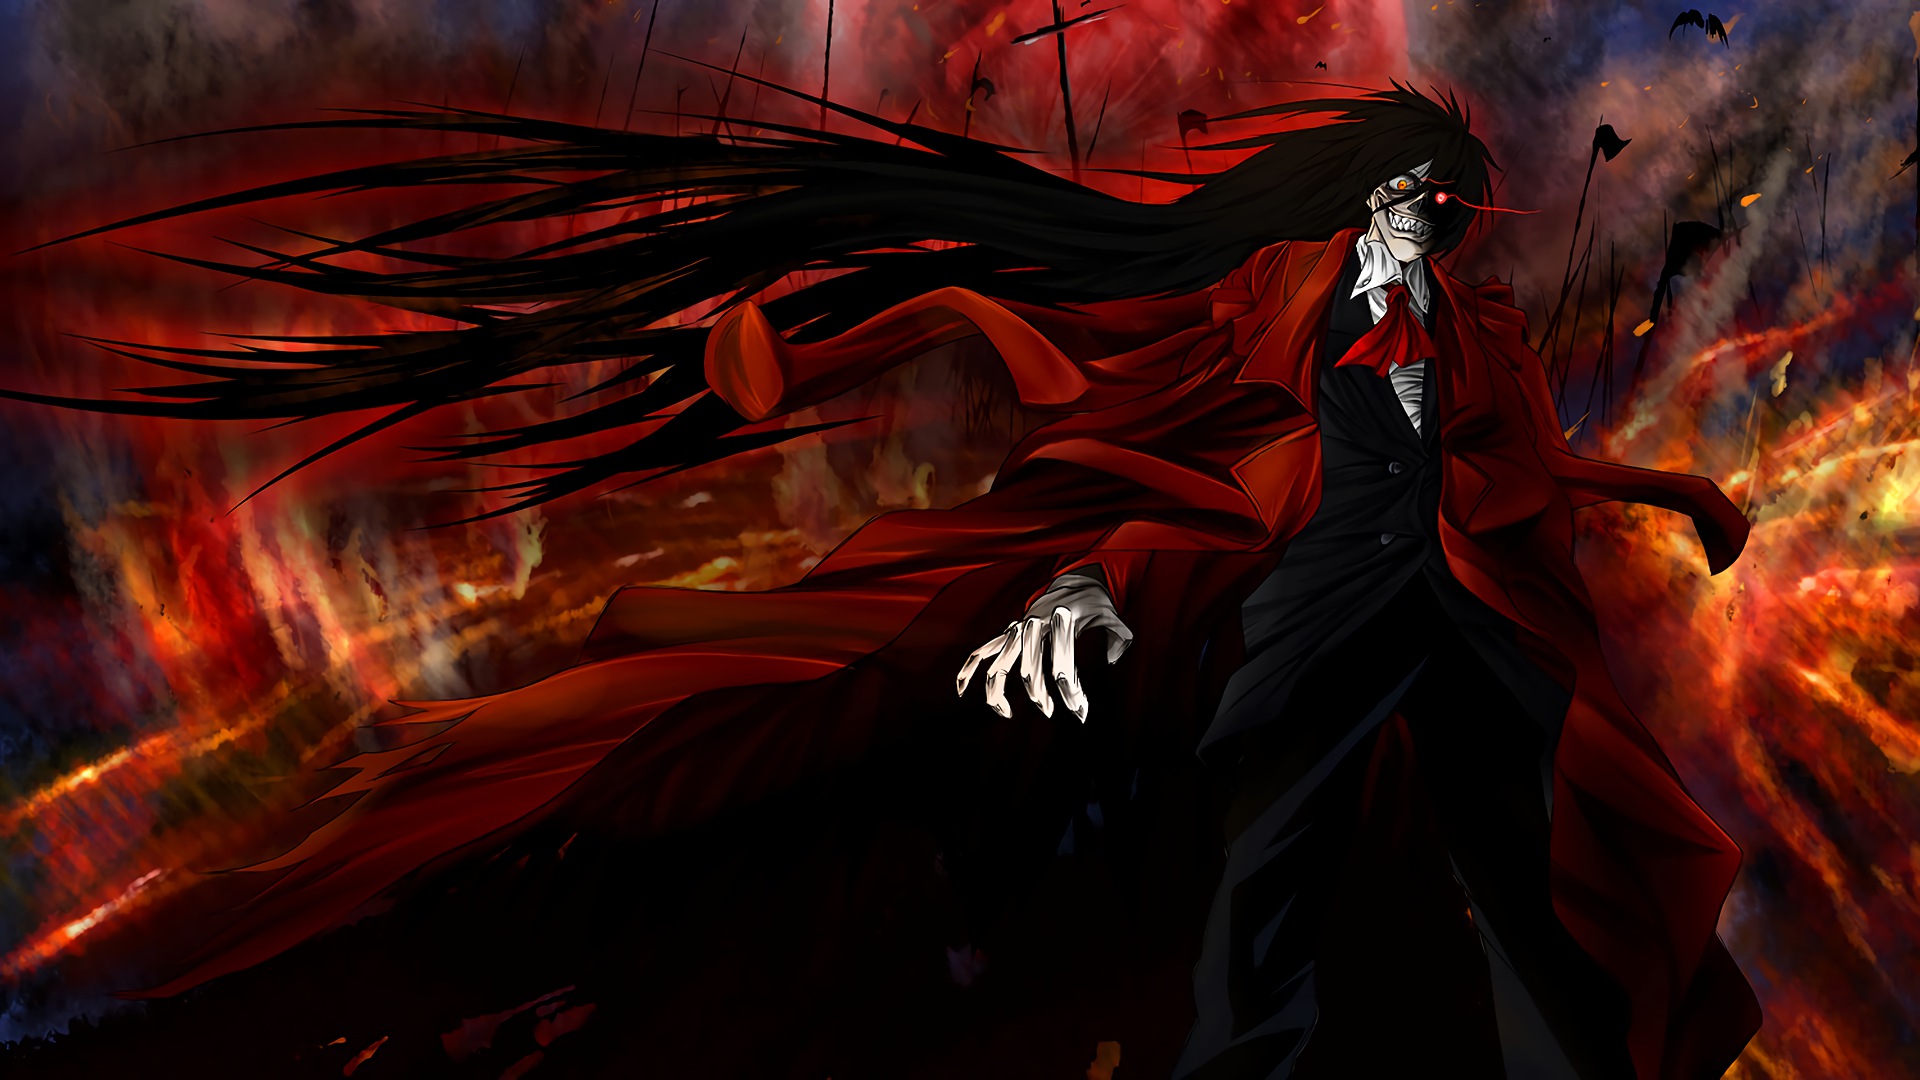 papel pintado infernal,cg artwork,rojo,demonio,ilustración,oscuridad